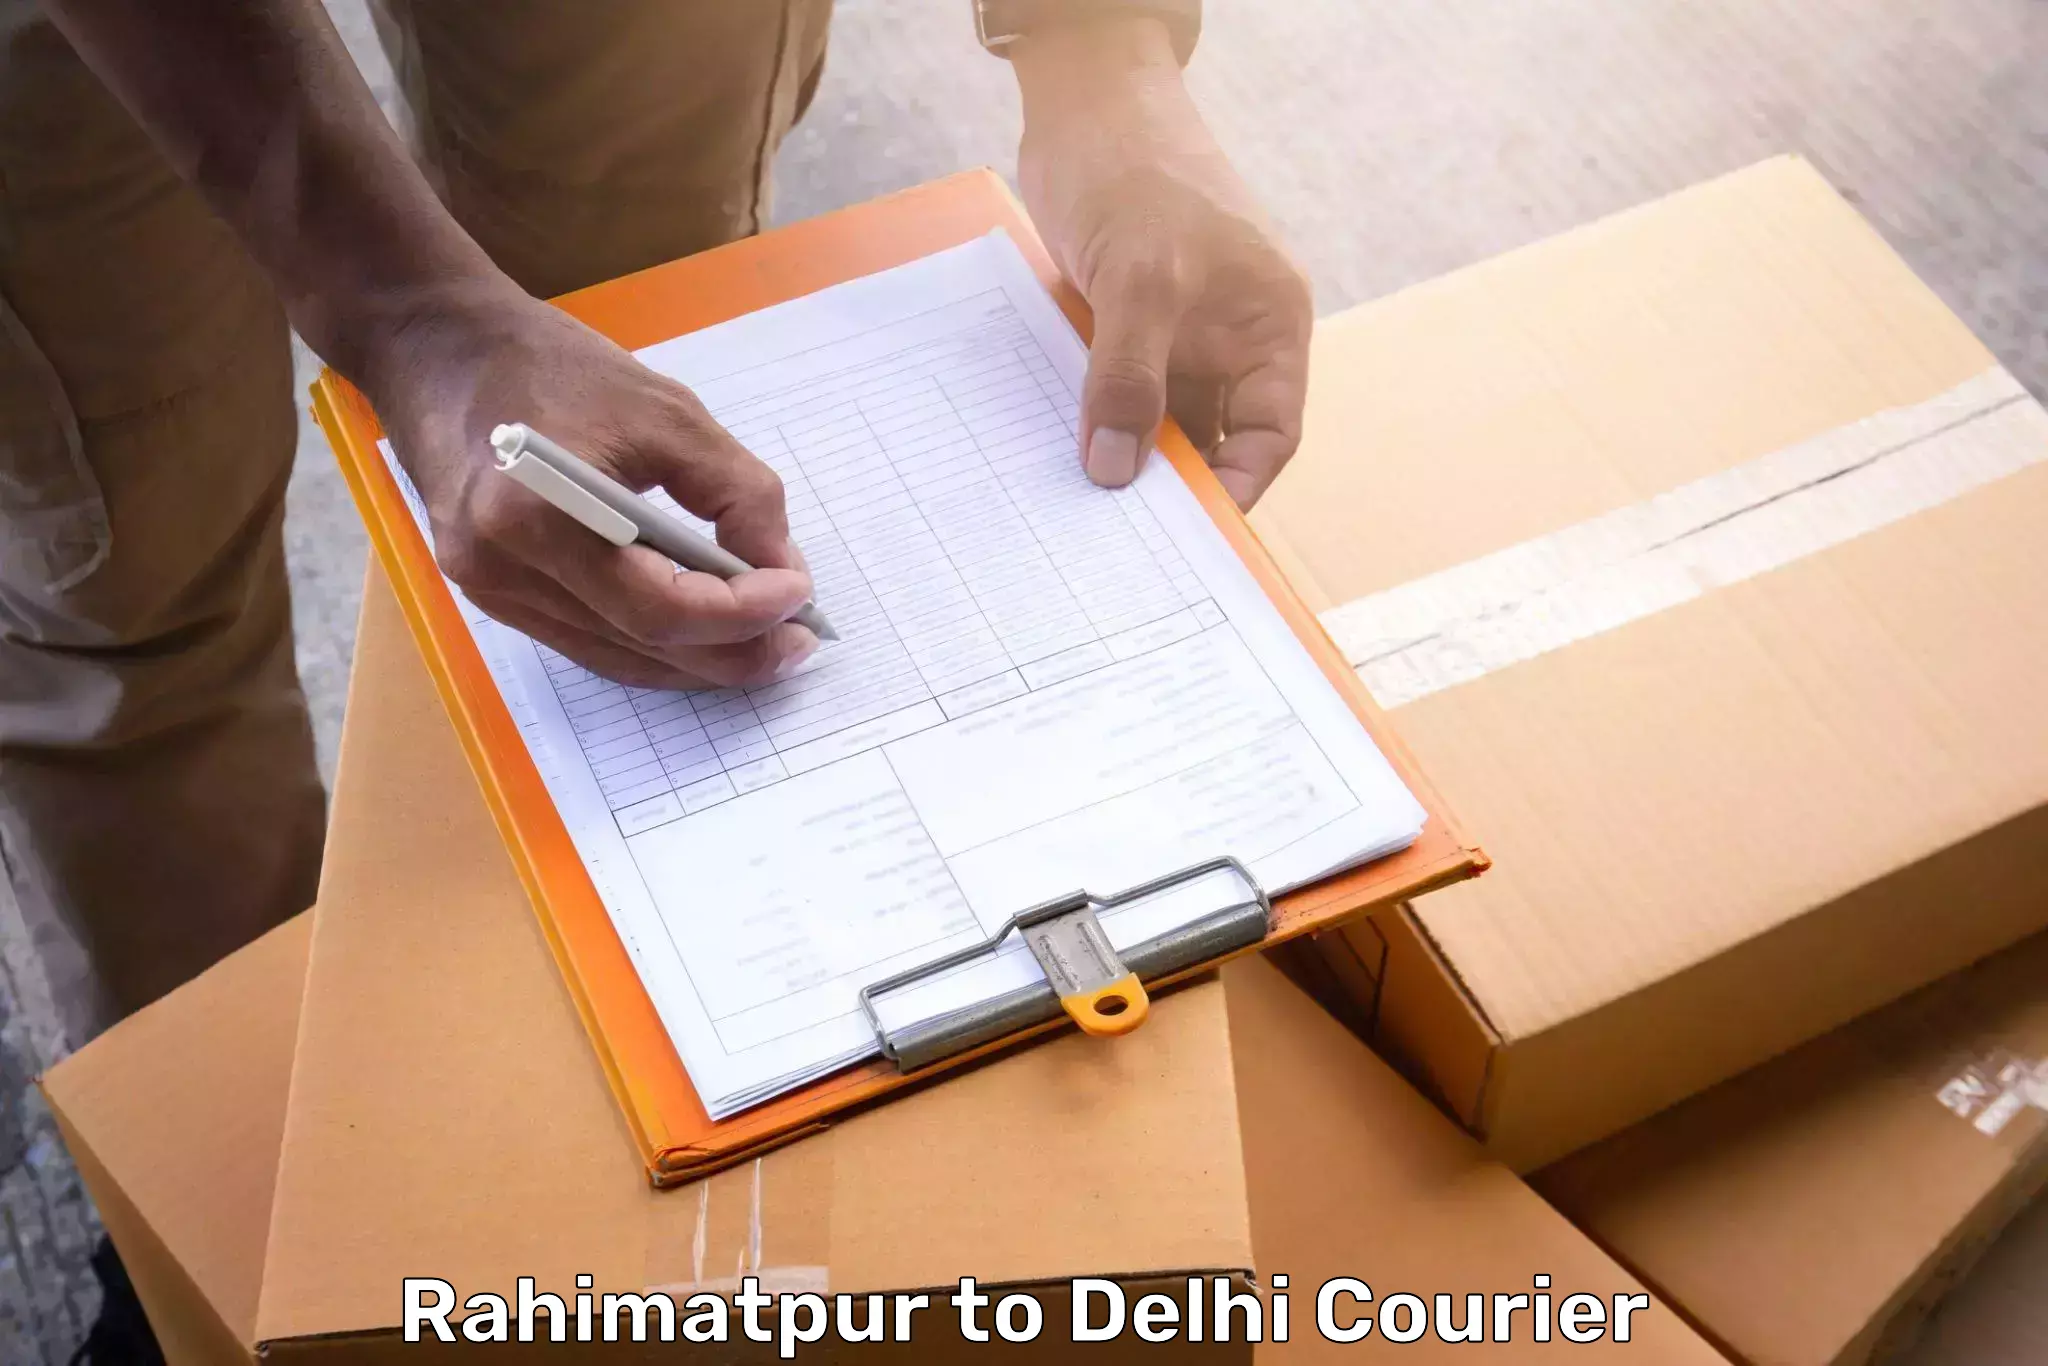 Door-to-door baggage service Rahimatpur to IIT Delhi